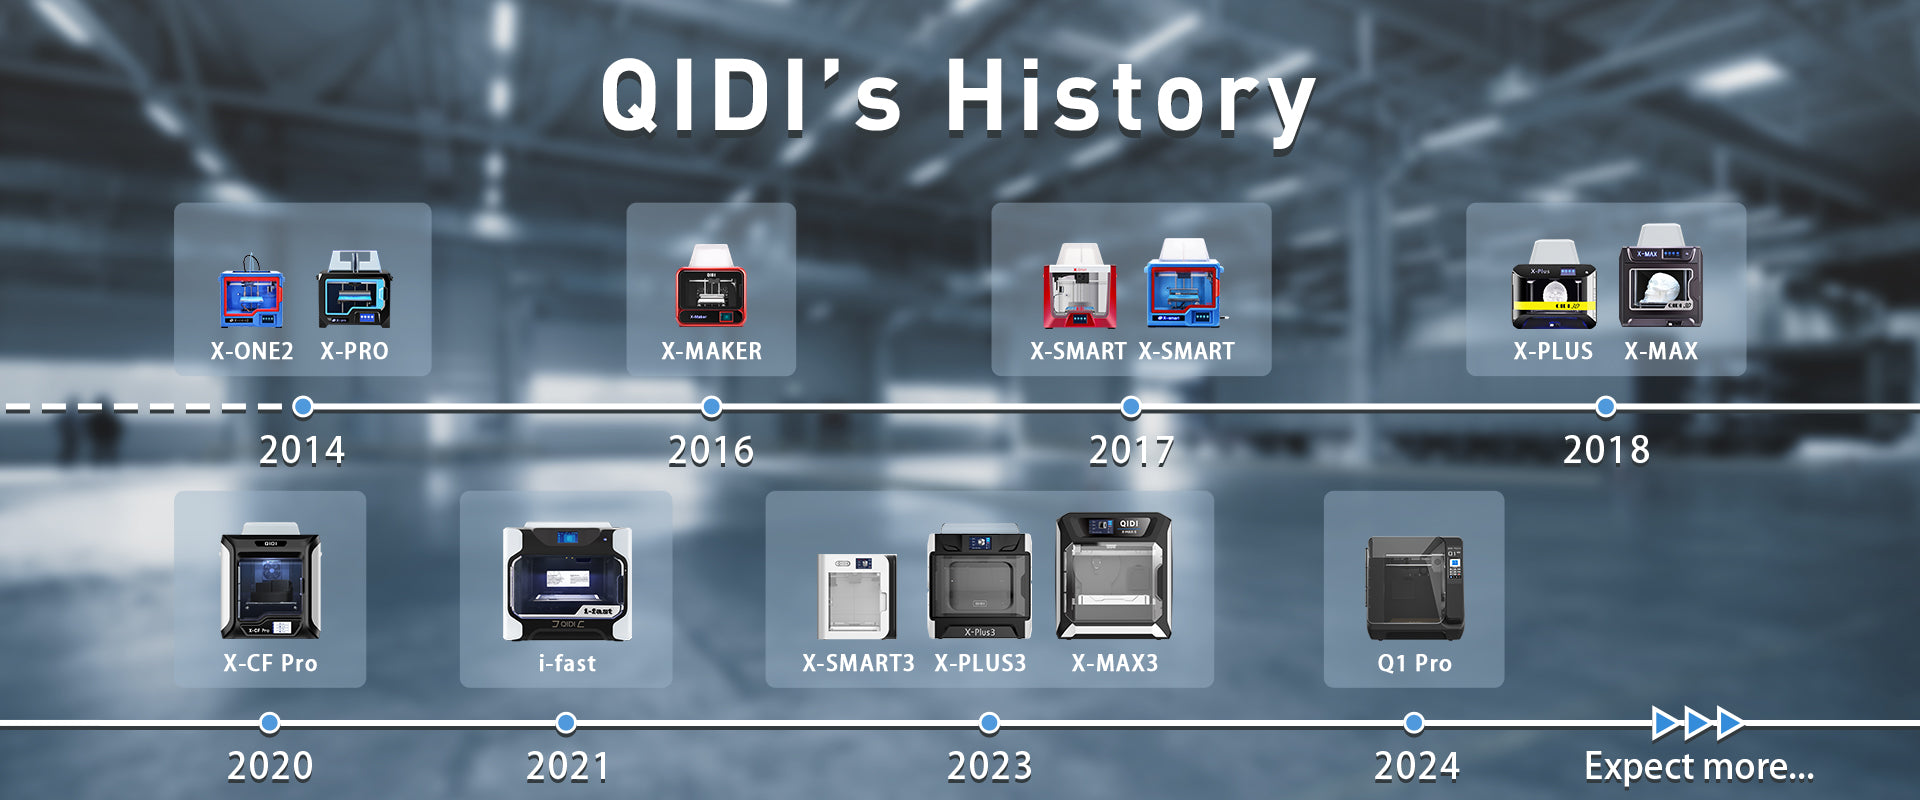 QIDI-Geschichte